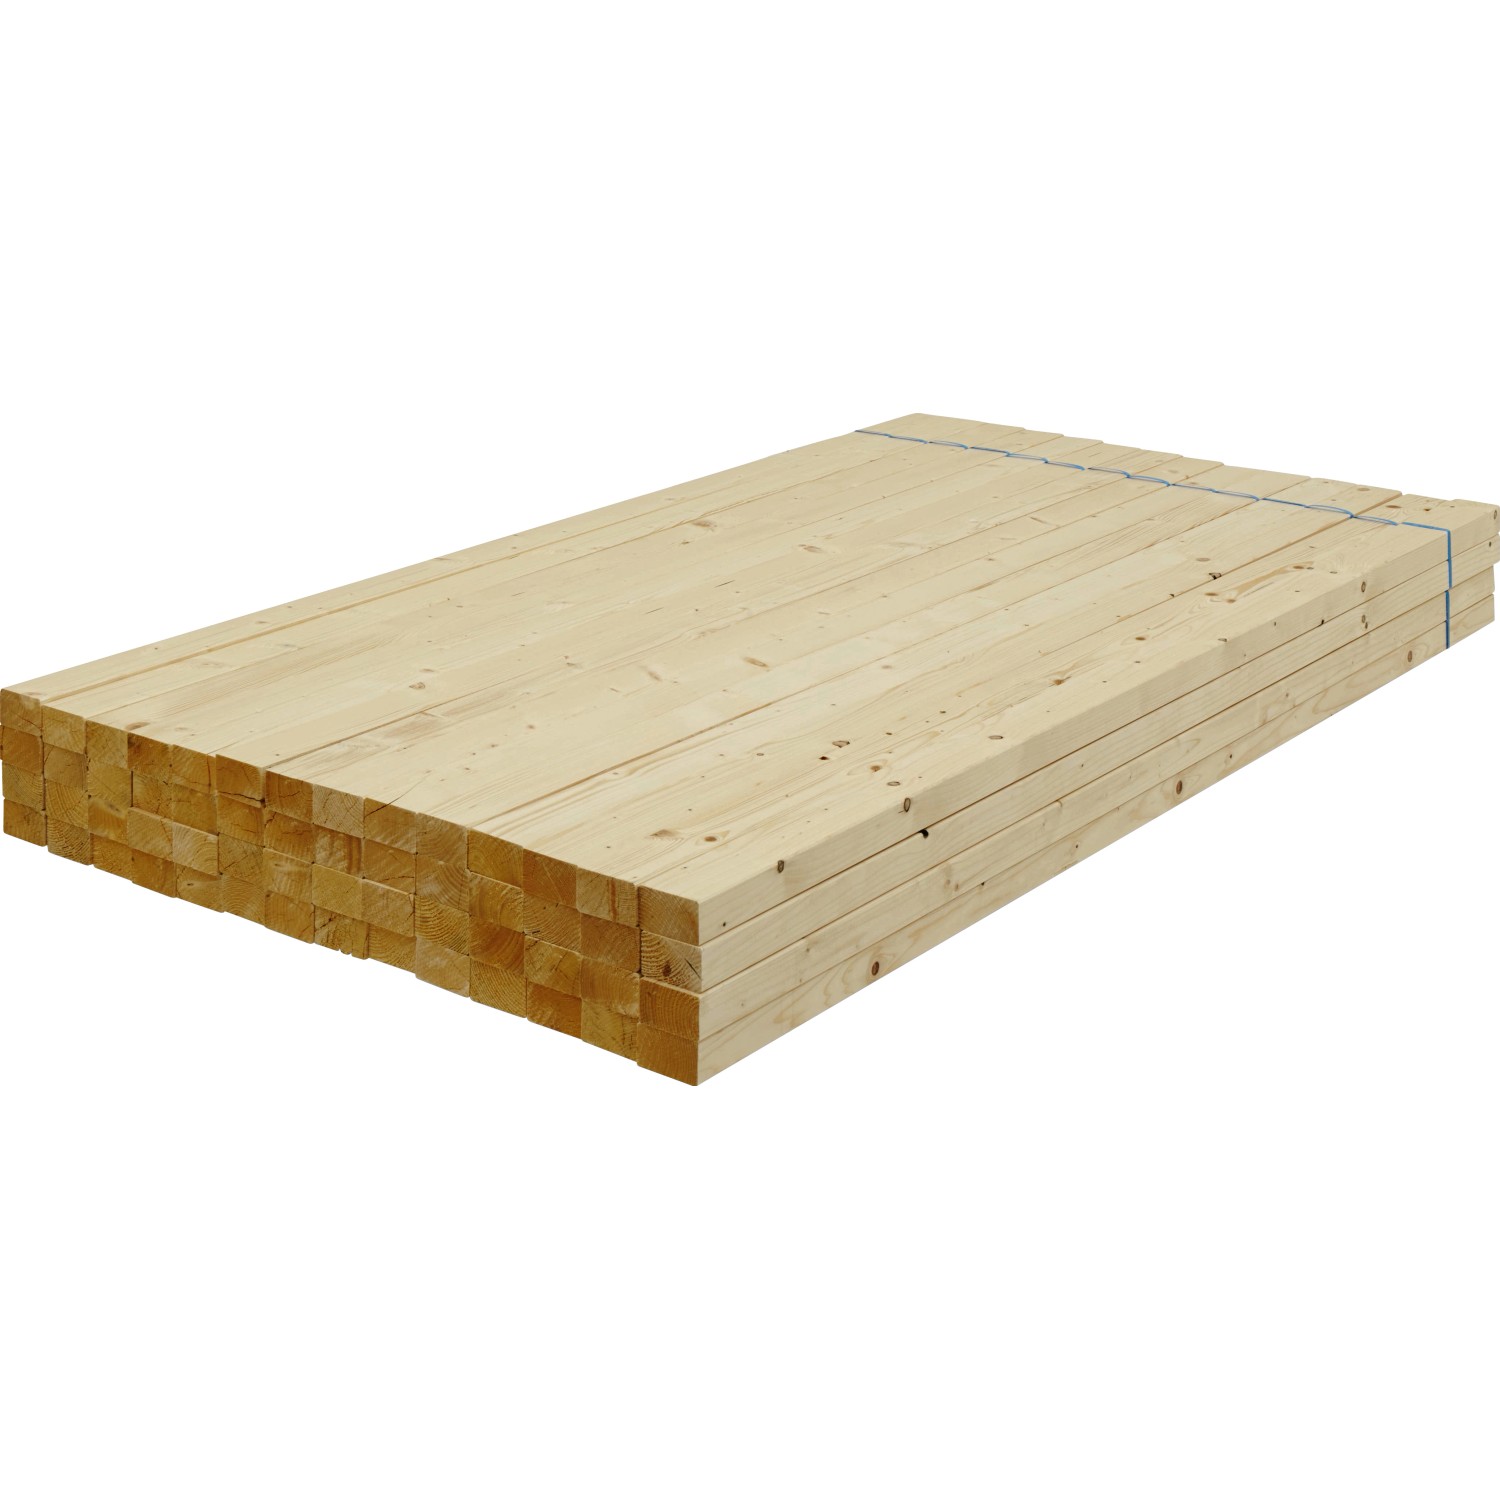 Rahmenholz aus Fichte/Tanne gehobelt 44 mm x 74 mm x 2.000 mm